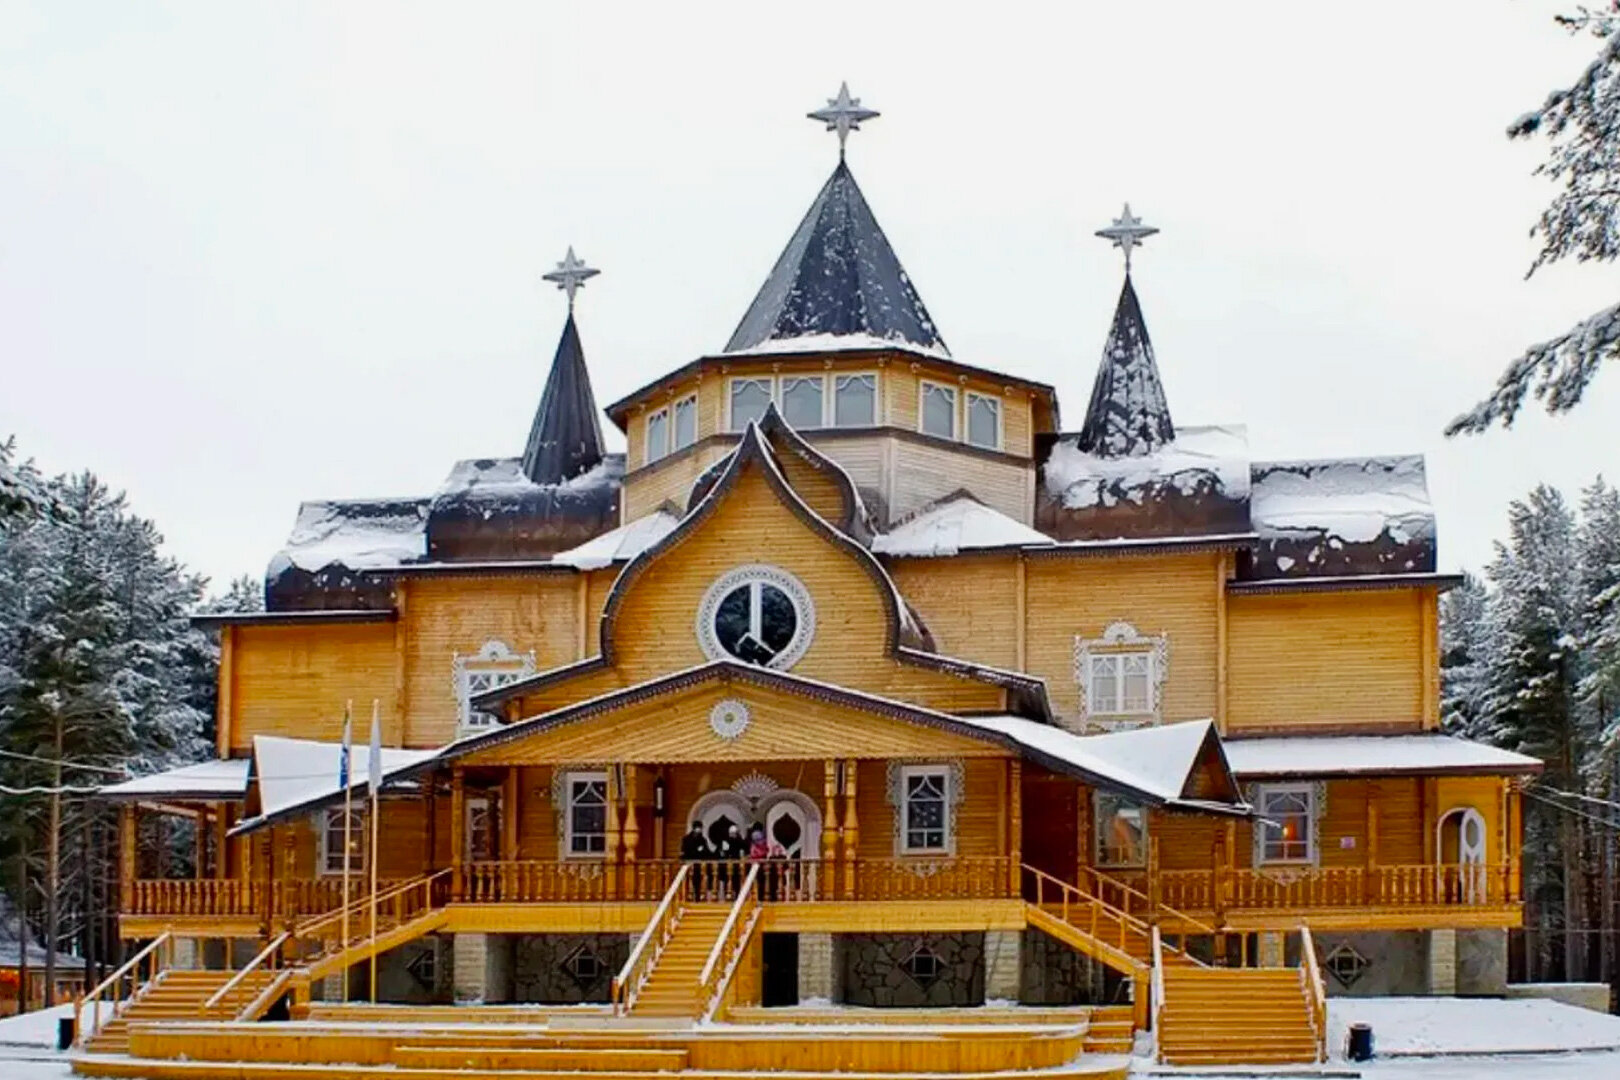 Названа стоимость аренды дворца Деда Мороза на Новый год